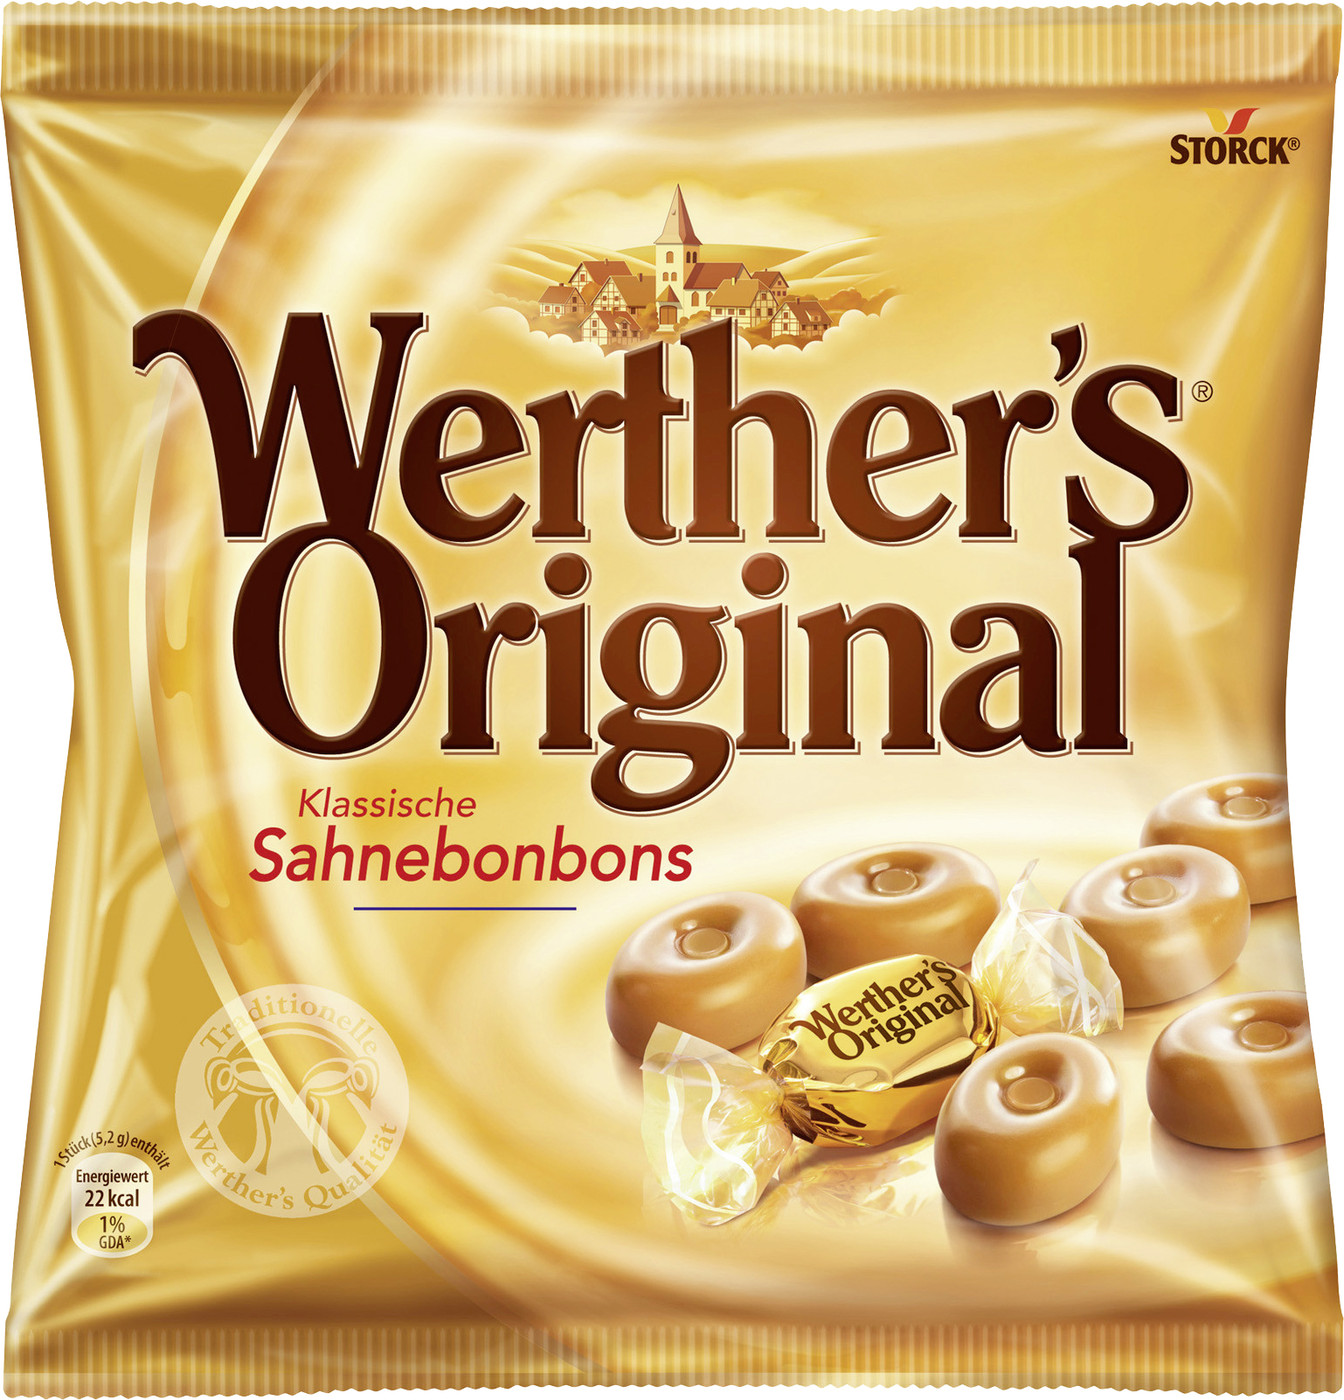 Werther's Original klassische Sahnebonbons 245G